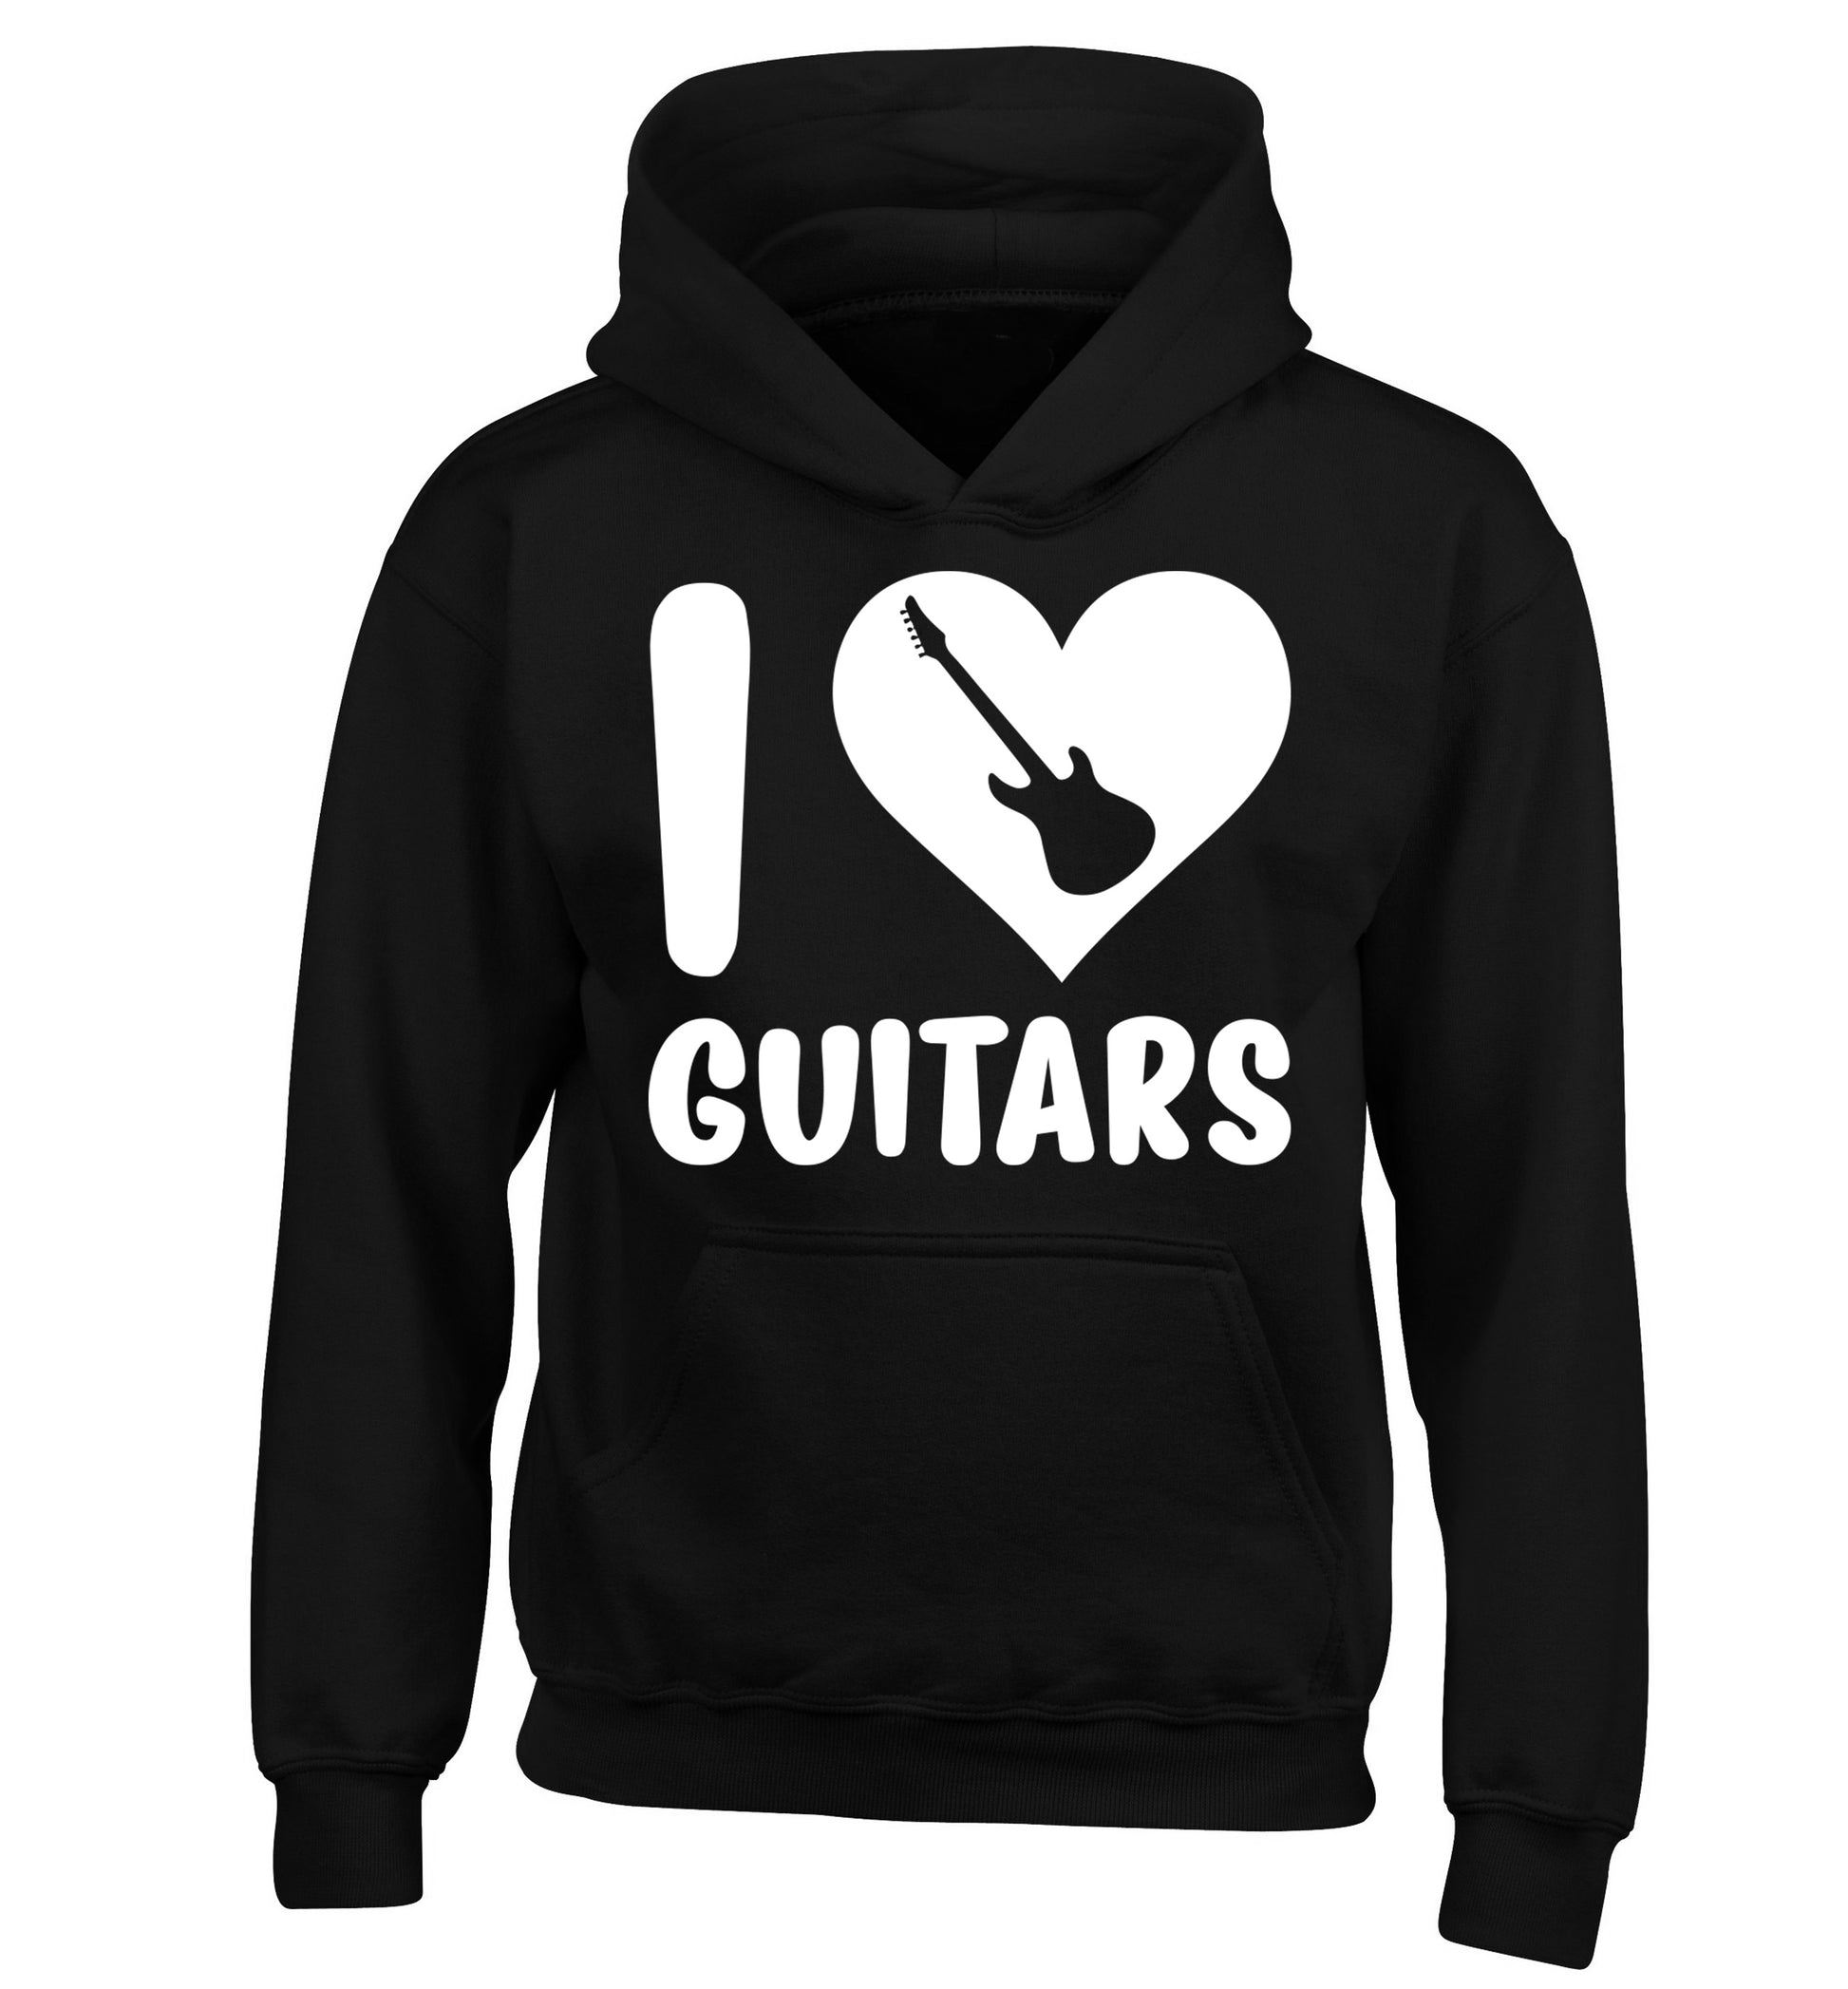 I love guitars children's black hoodie 12-14 Years